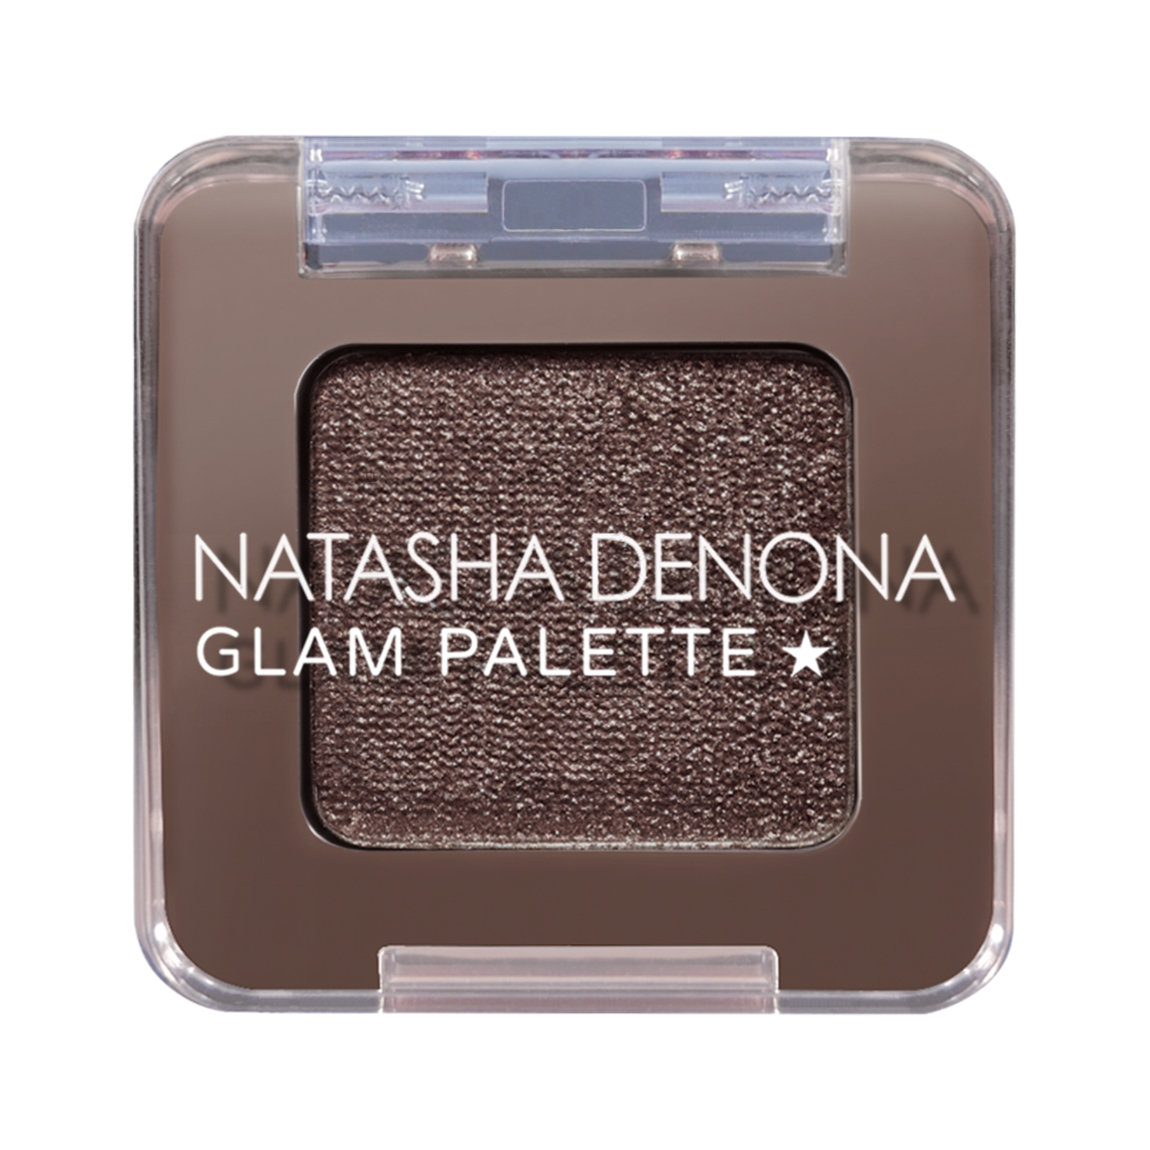 Free deluxe mini Natasha Denona Glam Palette Eyeshadow Single with qualifying Natasha Denona purchase